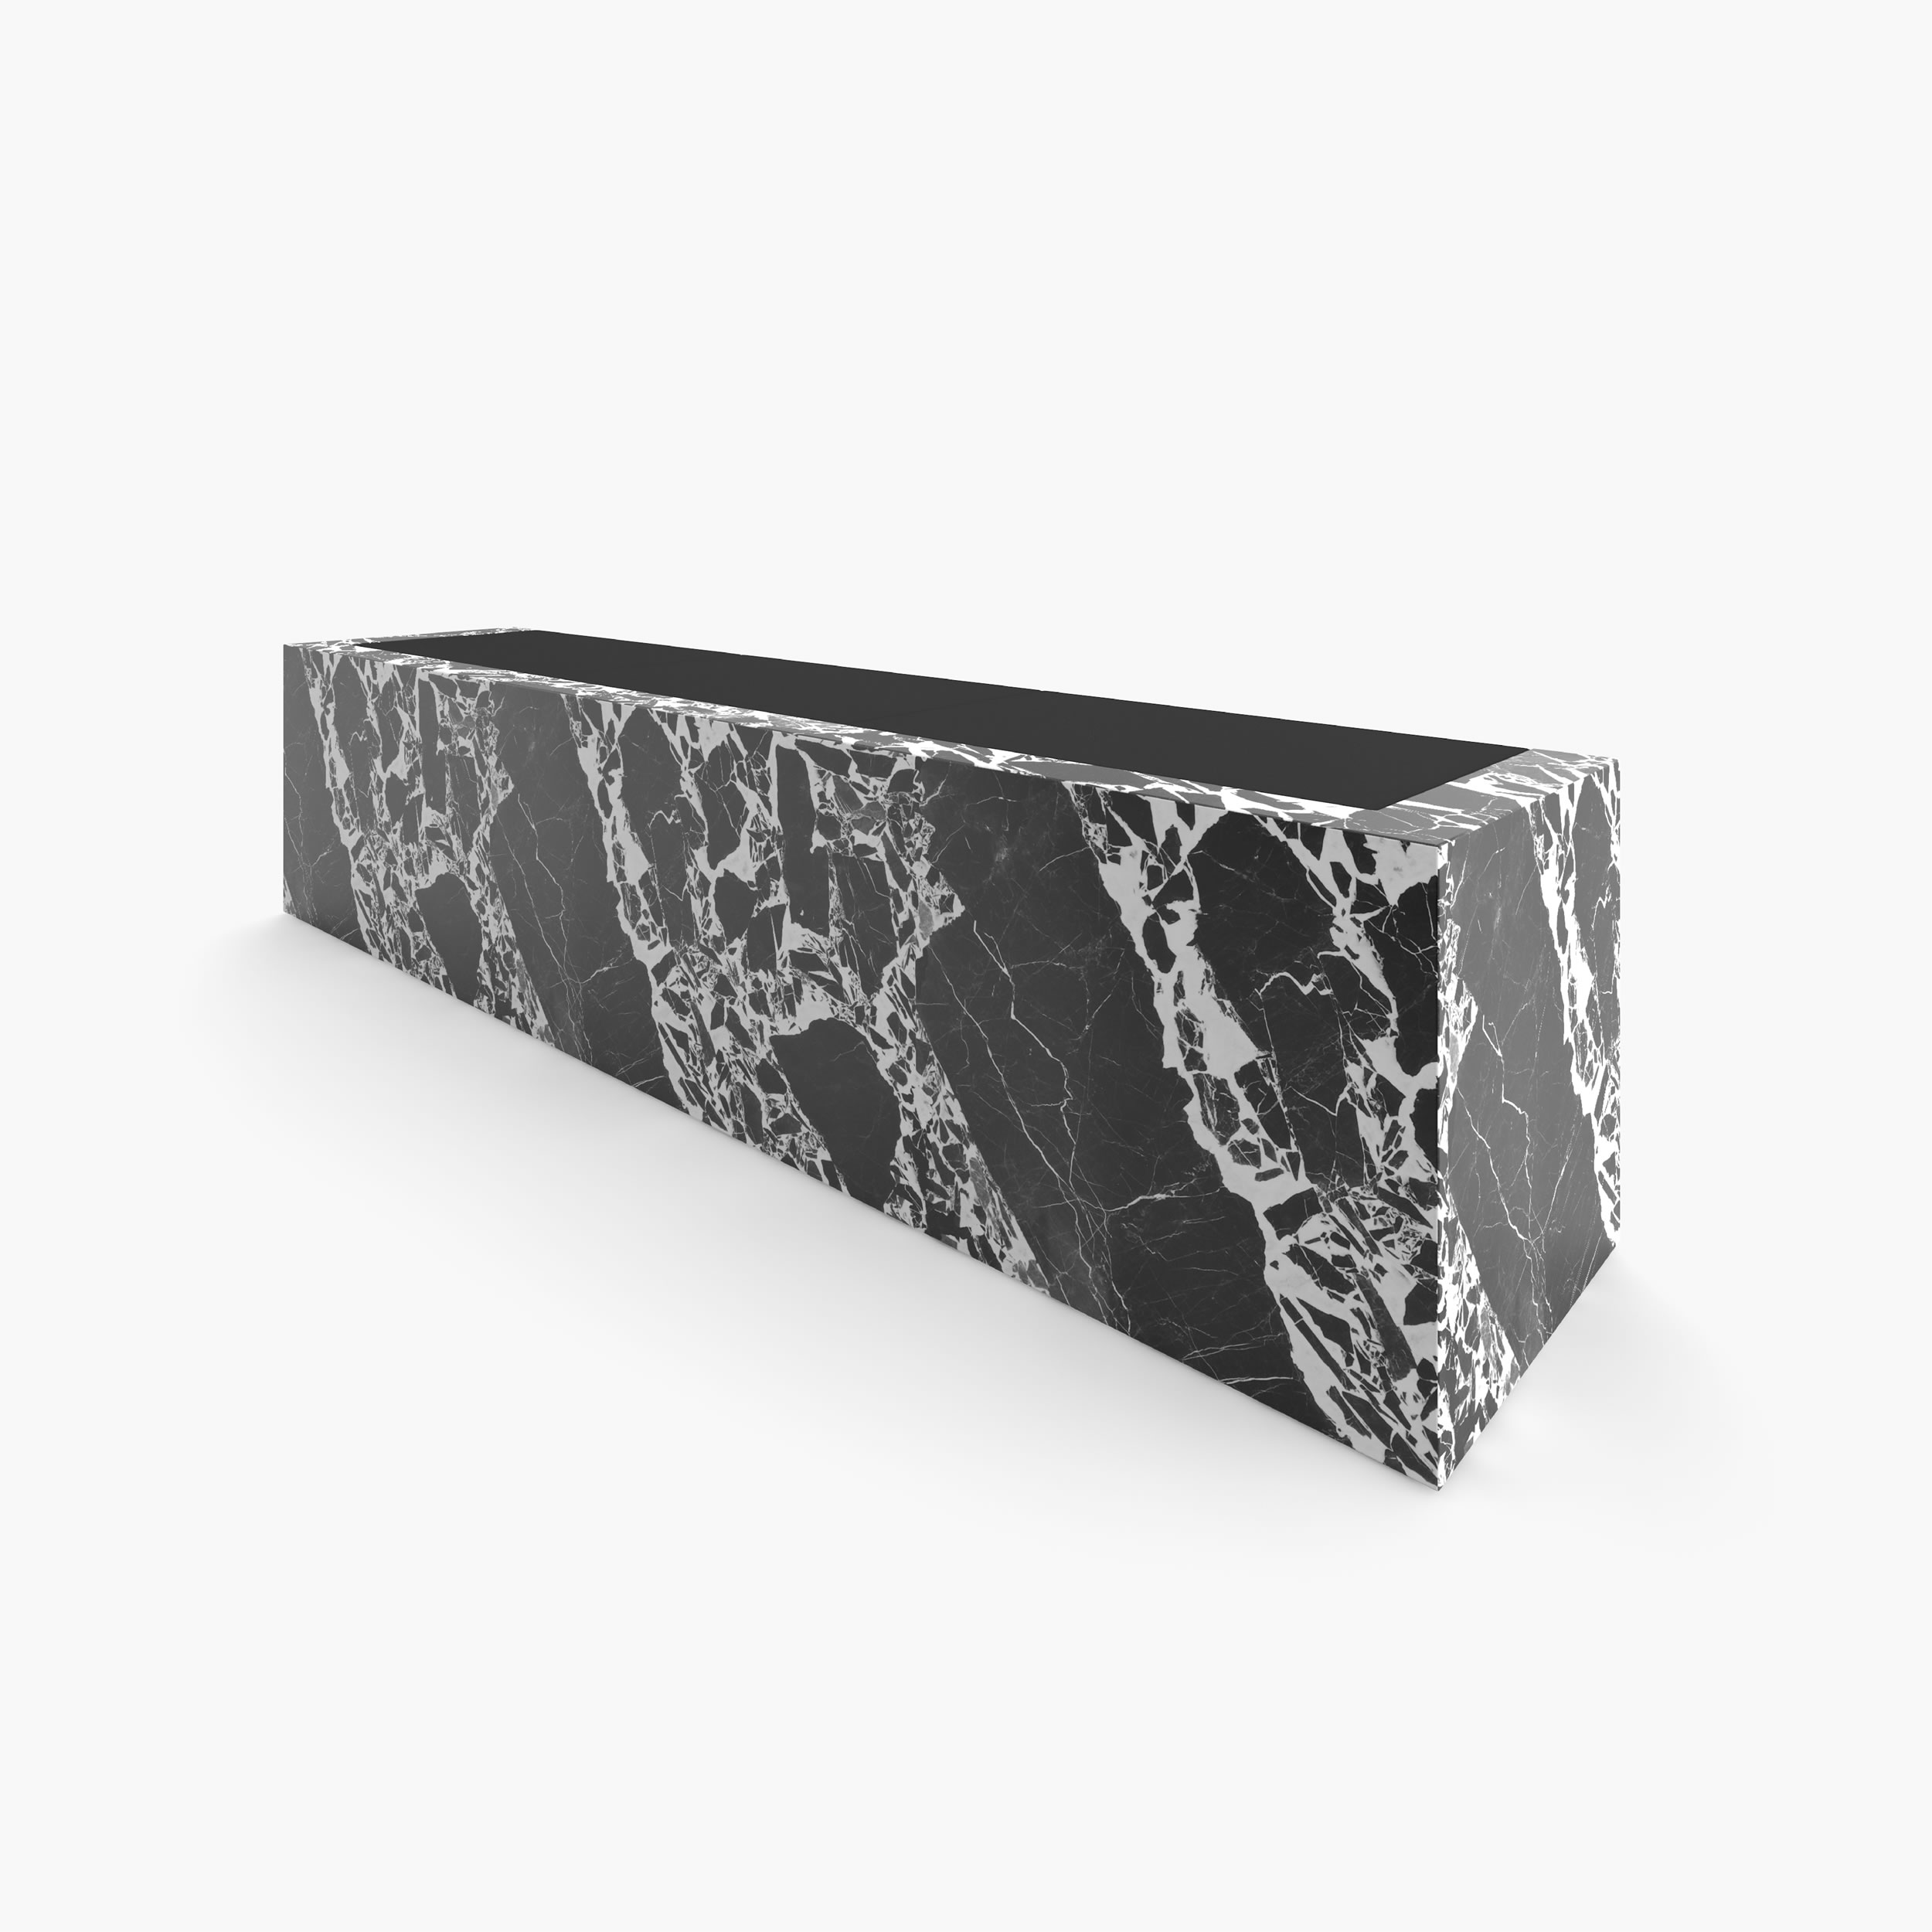 Sideboard mit Schubladen Weiss Grand Antique Marmor minimalistisch privater Arbeitsbereich Luxus Konsolen  Sideboards FS 407 FELIX SCHWAKE